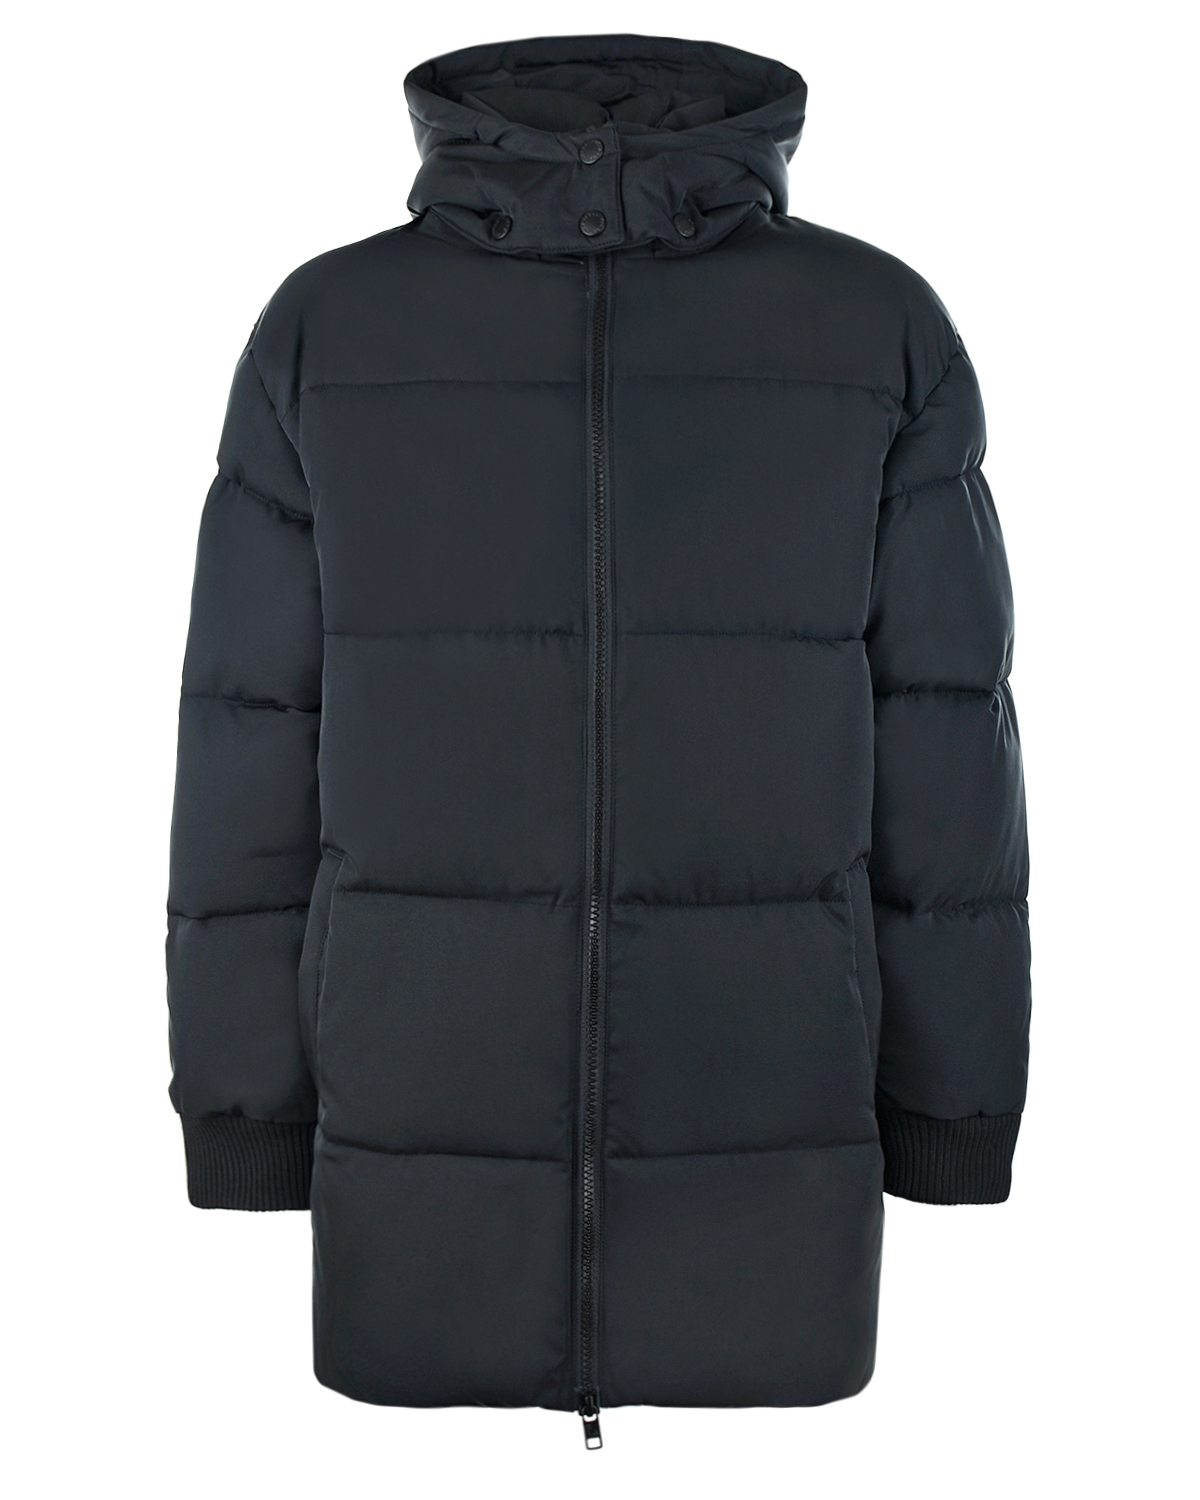 Удлиненная куртка с лампасами на рукавах Stella McCartney детская, размер 140, цвет черный - фото 1